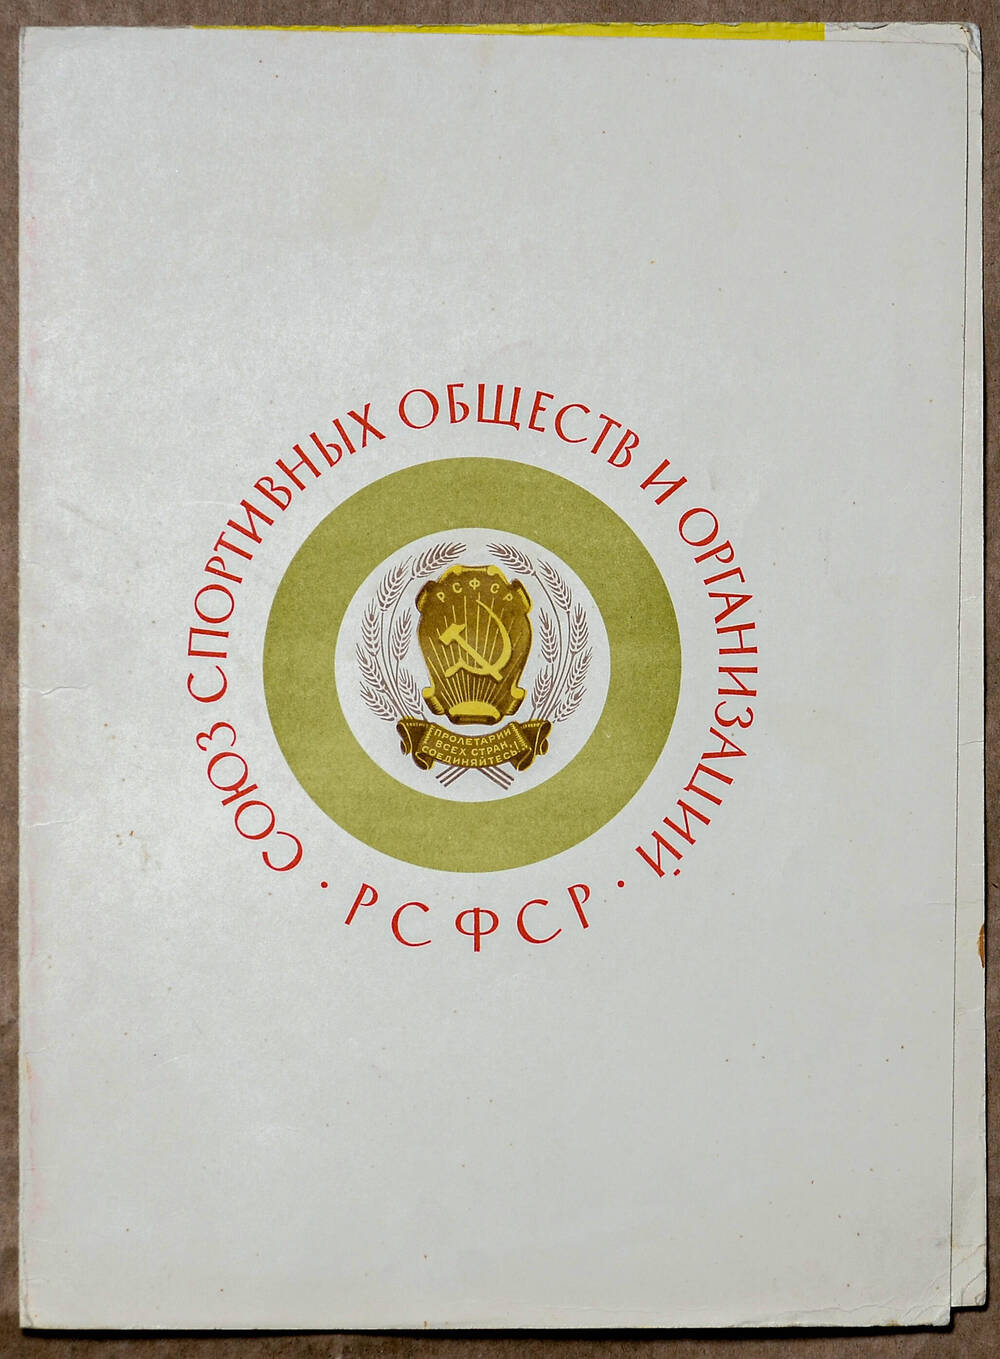 Диплом I степени Дымовой В.В. от Союза спортивных обществ и организаций РСФСР